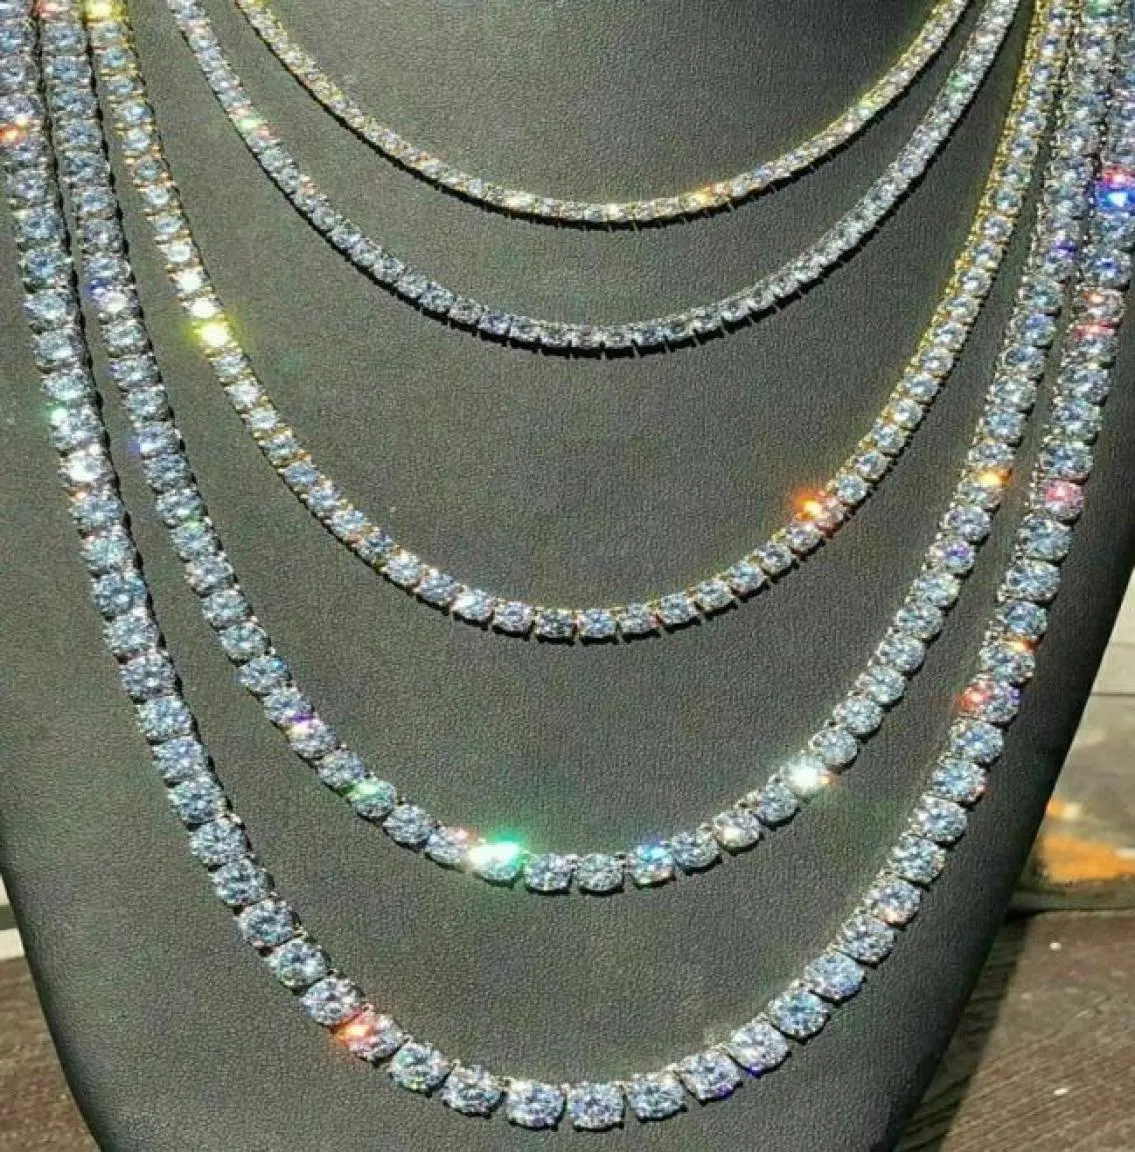 Corrente de tênis gelada pedras de zircônia real prata fileira única homens mulheres 3mm 4mm 5mm colar de diamantes joias presente para festa temática 4480846